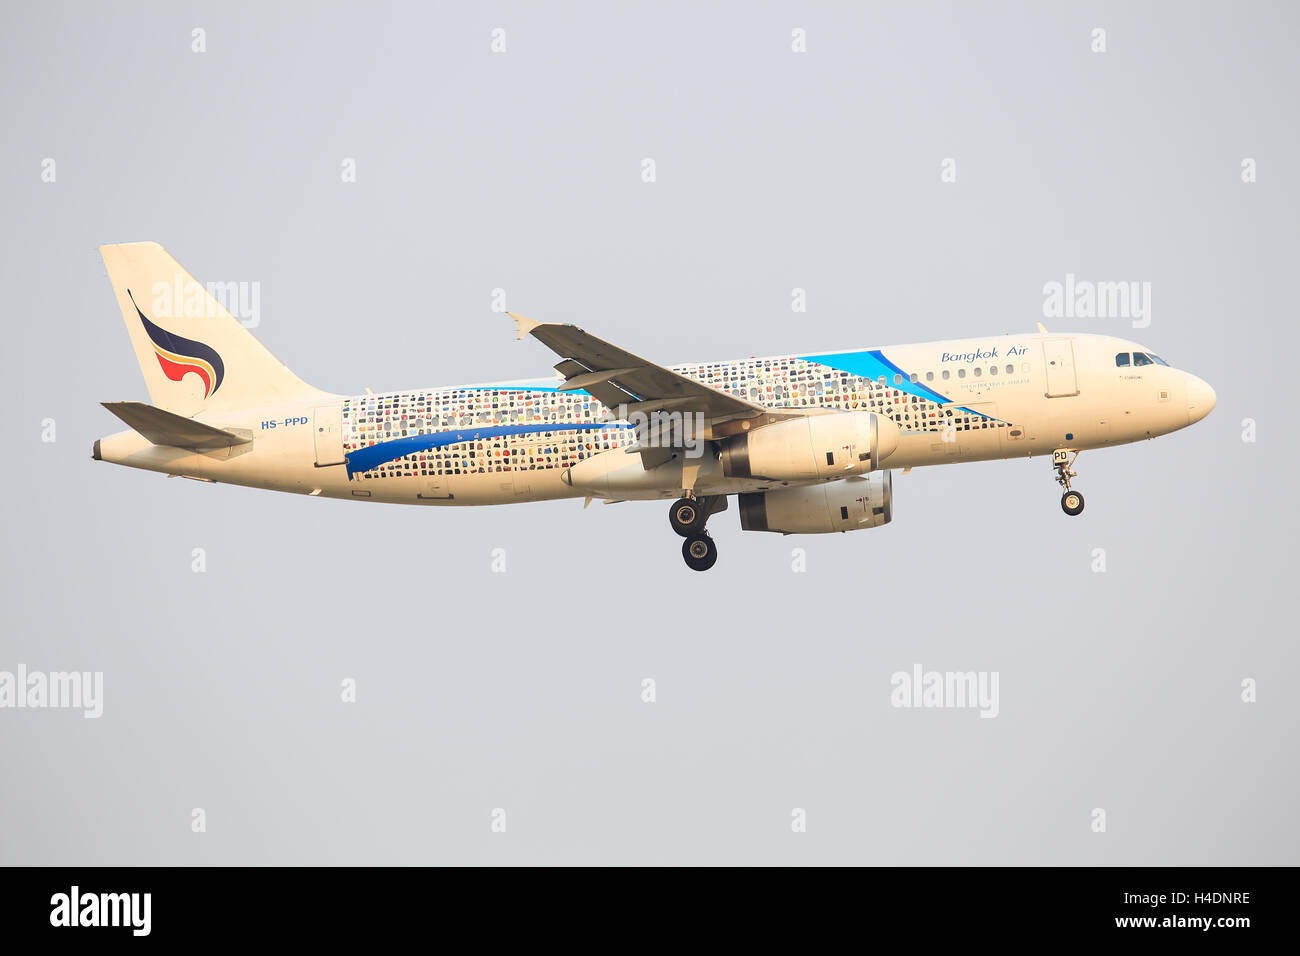 Bangkok/Thailand Februar 9, 2015: Airbus A320 from Bangkok Air Hs-PPD landing at Bangkok Airport. Stock Photo